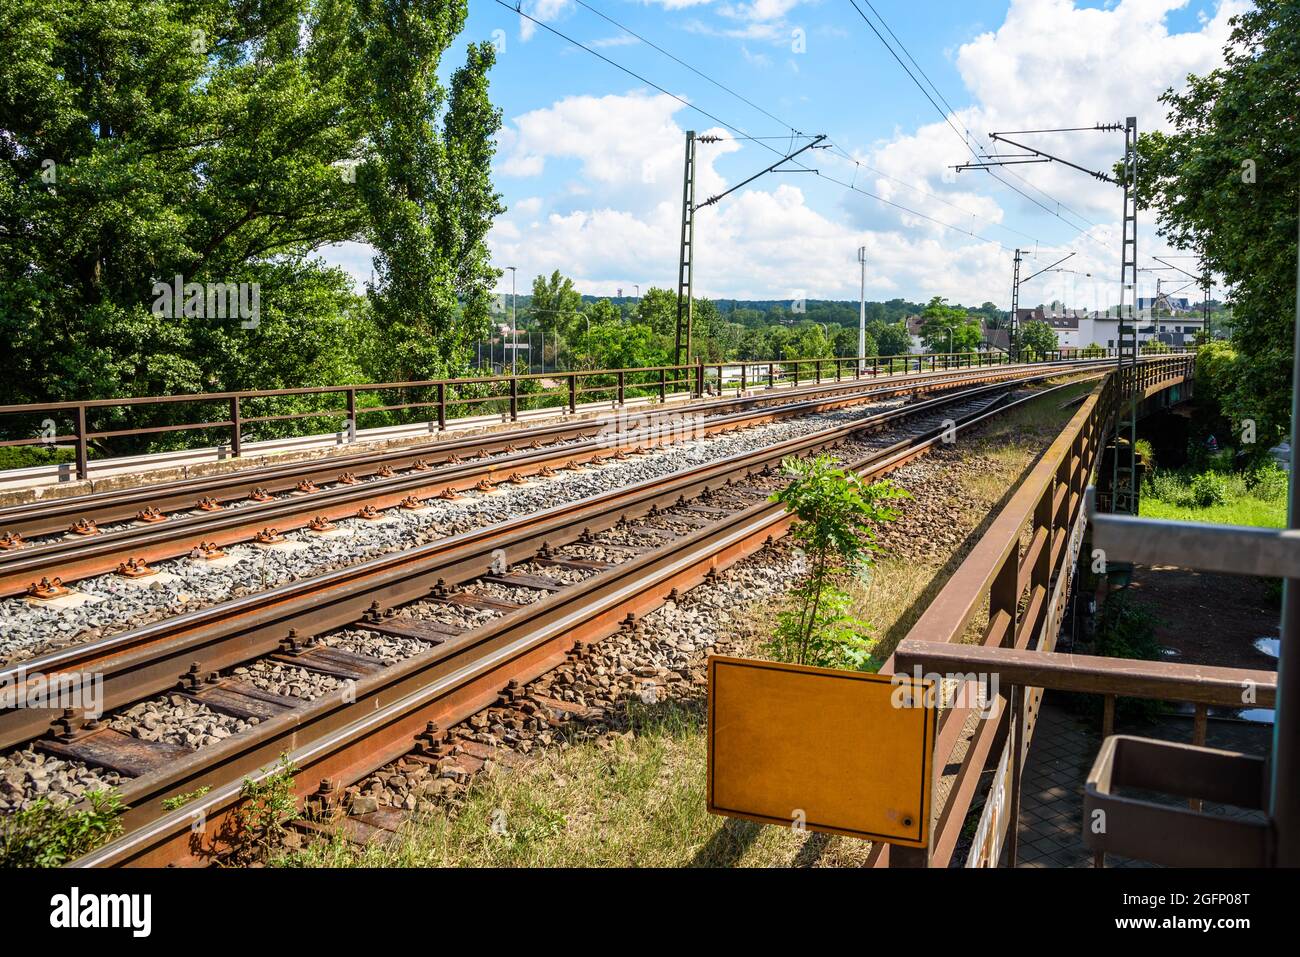 Ferrovia elettrica deserta elevata in un ambiente urbano in una soleggiata giornata estiva Foto Stock